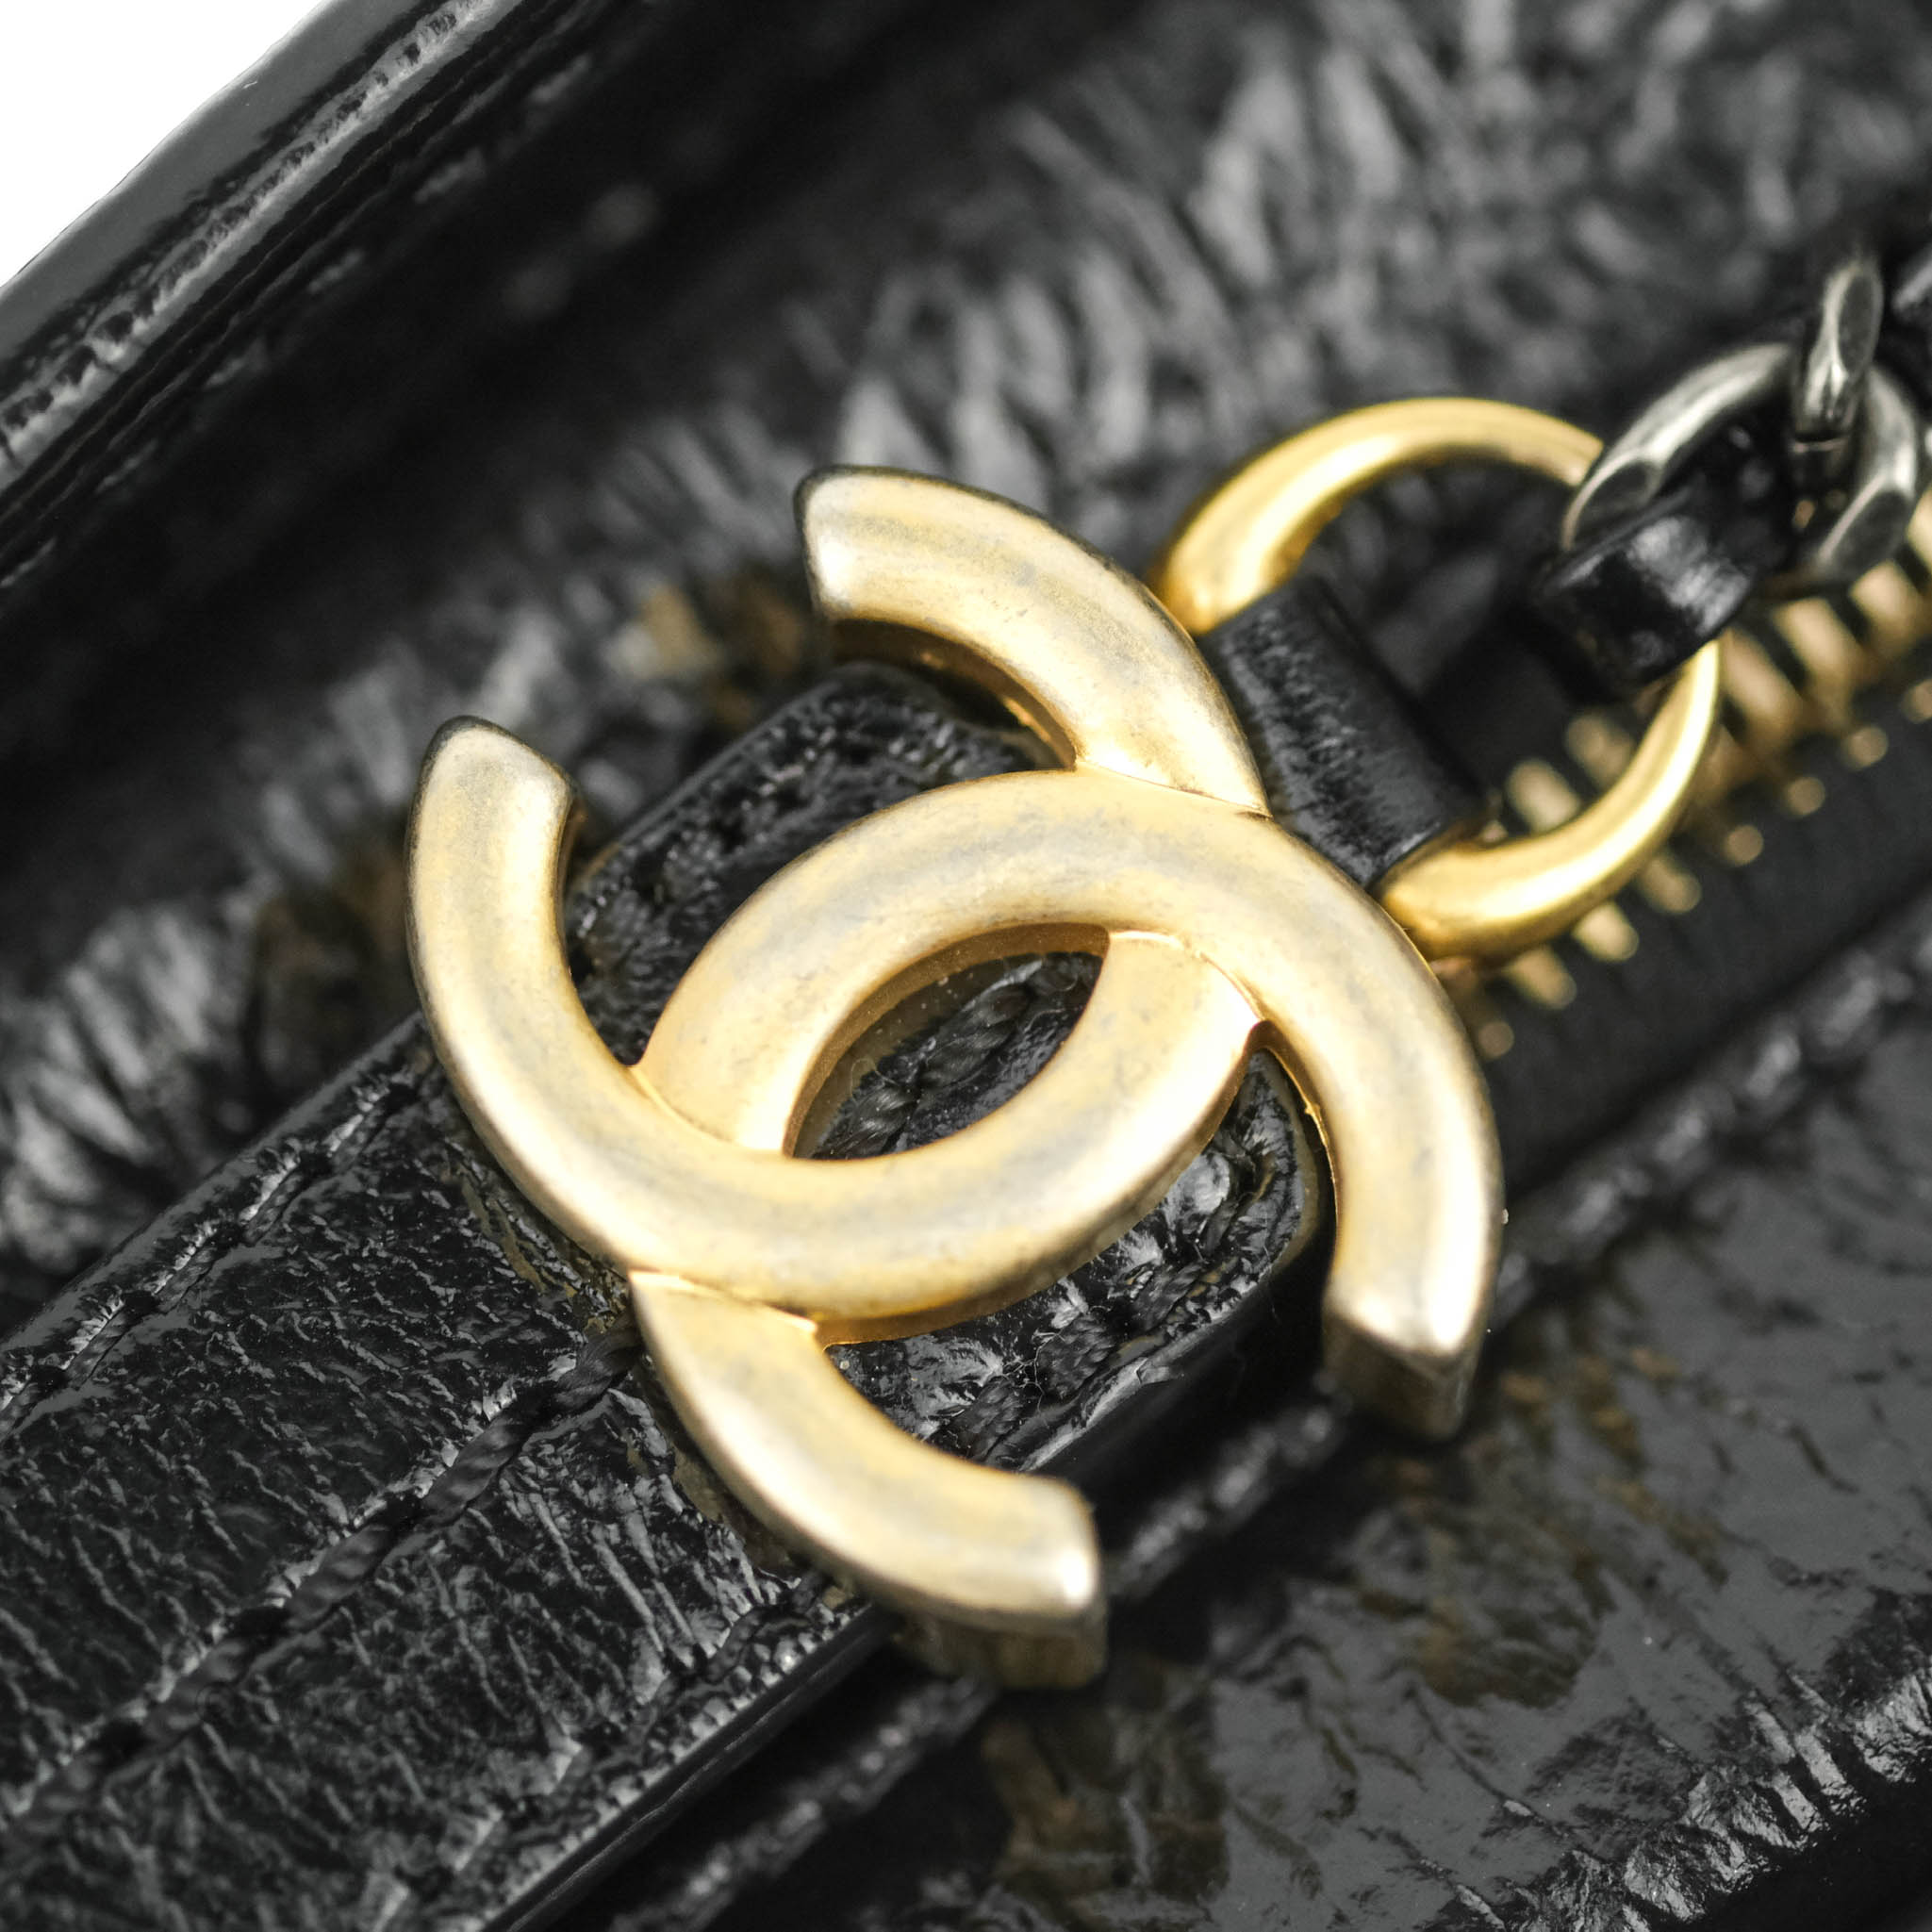 No.3489-Chanel Medium Chevron Gabrielle Hobo Bag – Gallery Luxe